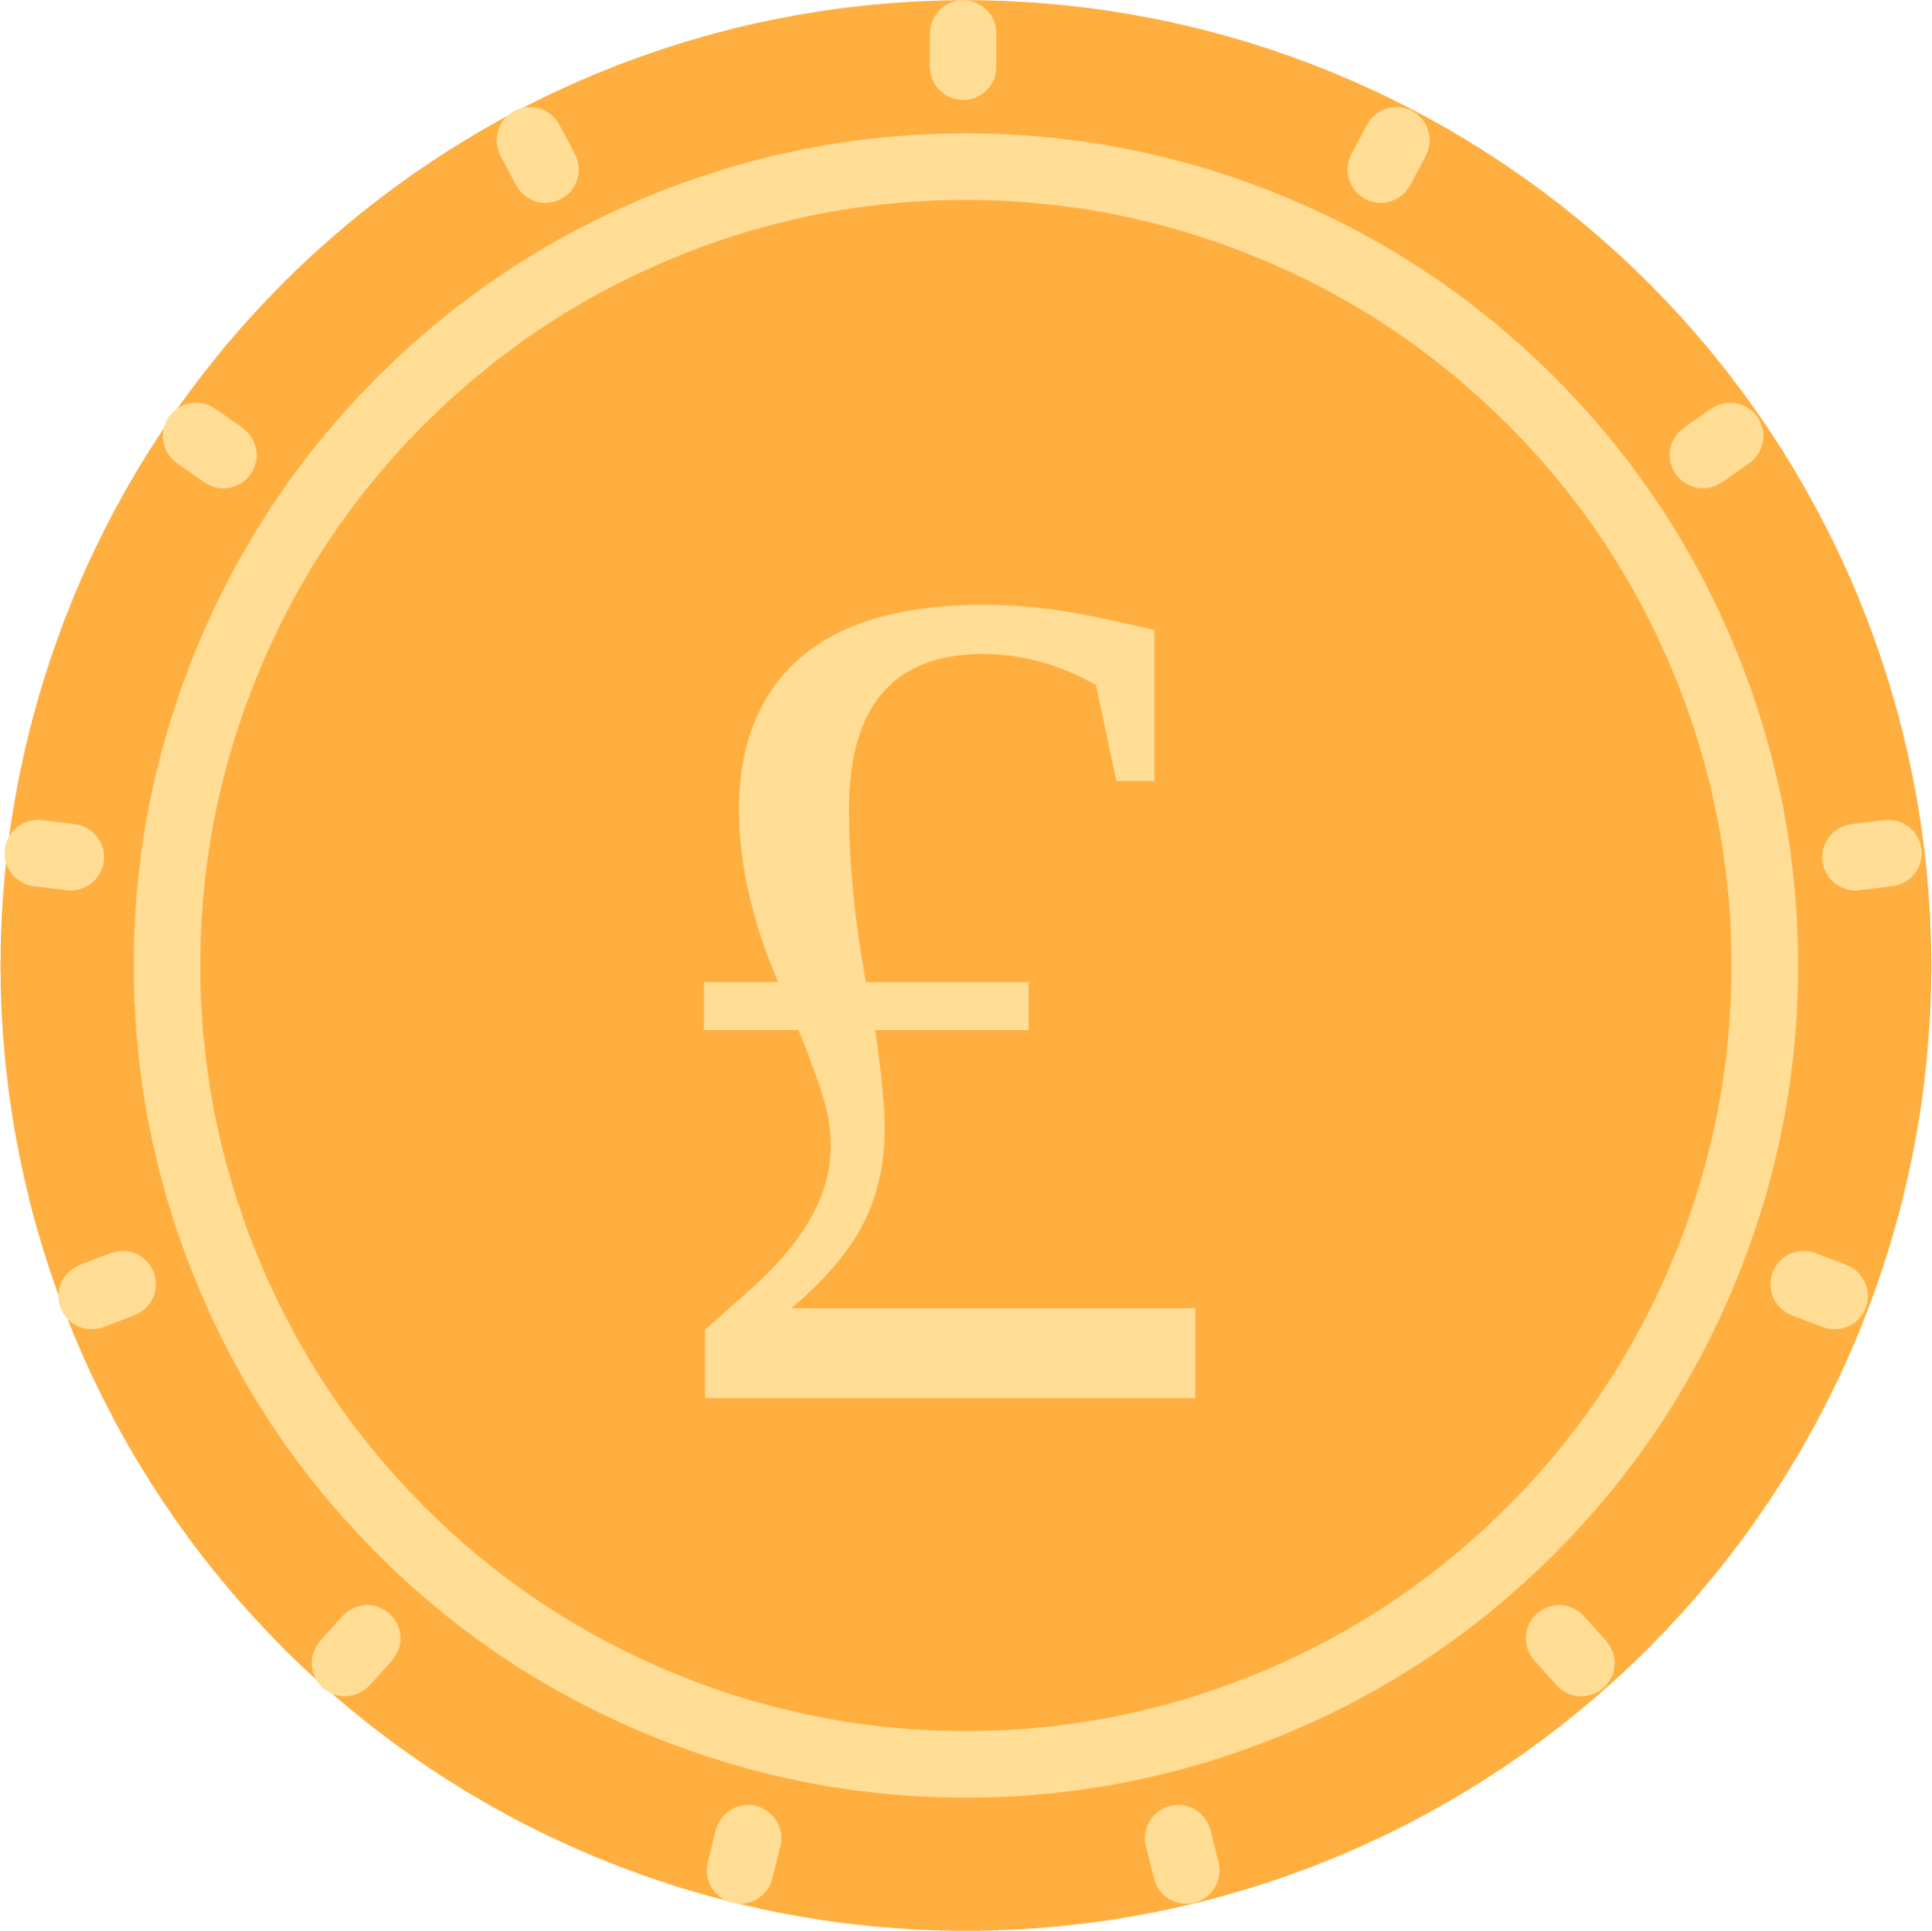 pound coin icon